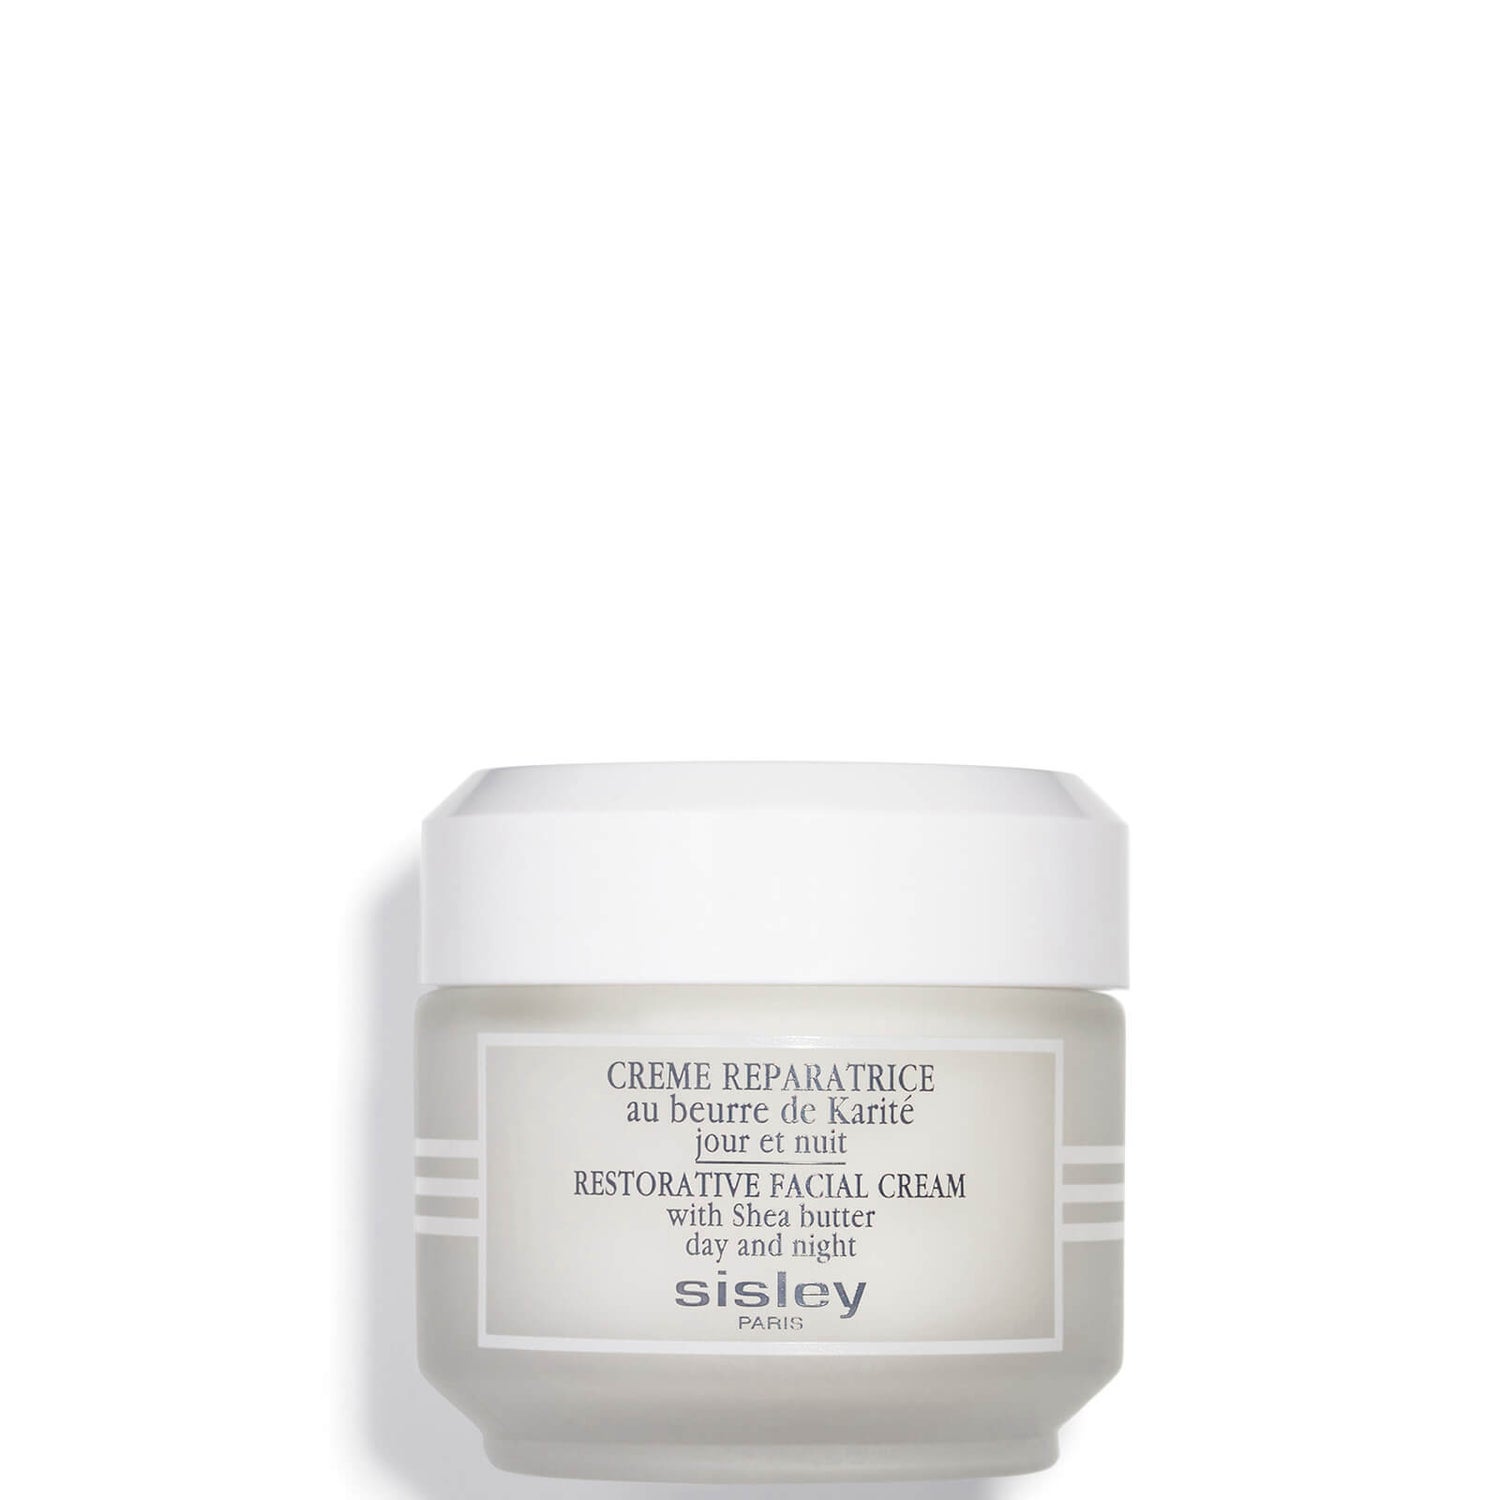 SISLEY-PARIS Restorative Facial Cream Jar 50ml | Cult Beauty